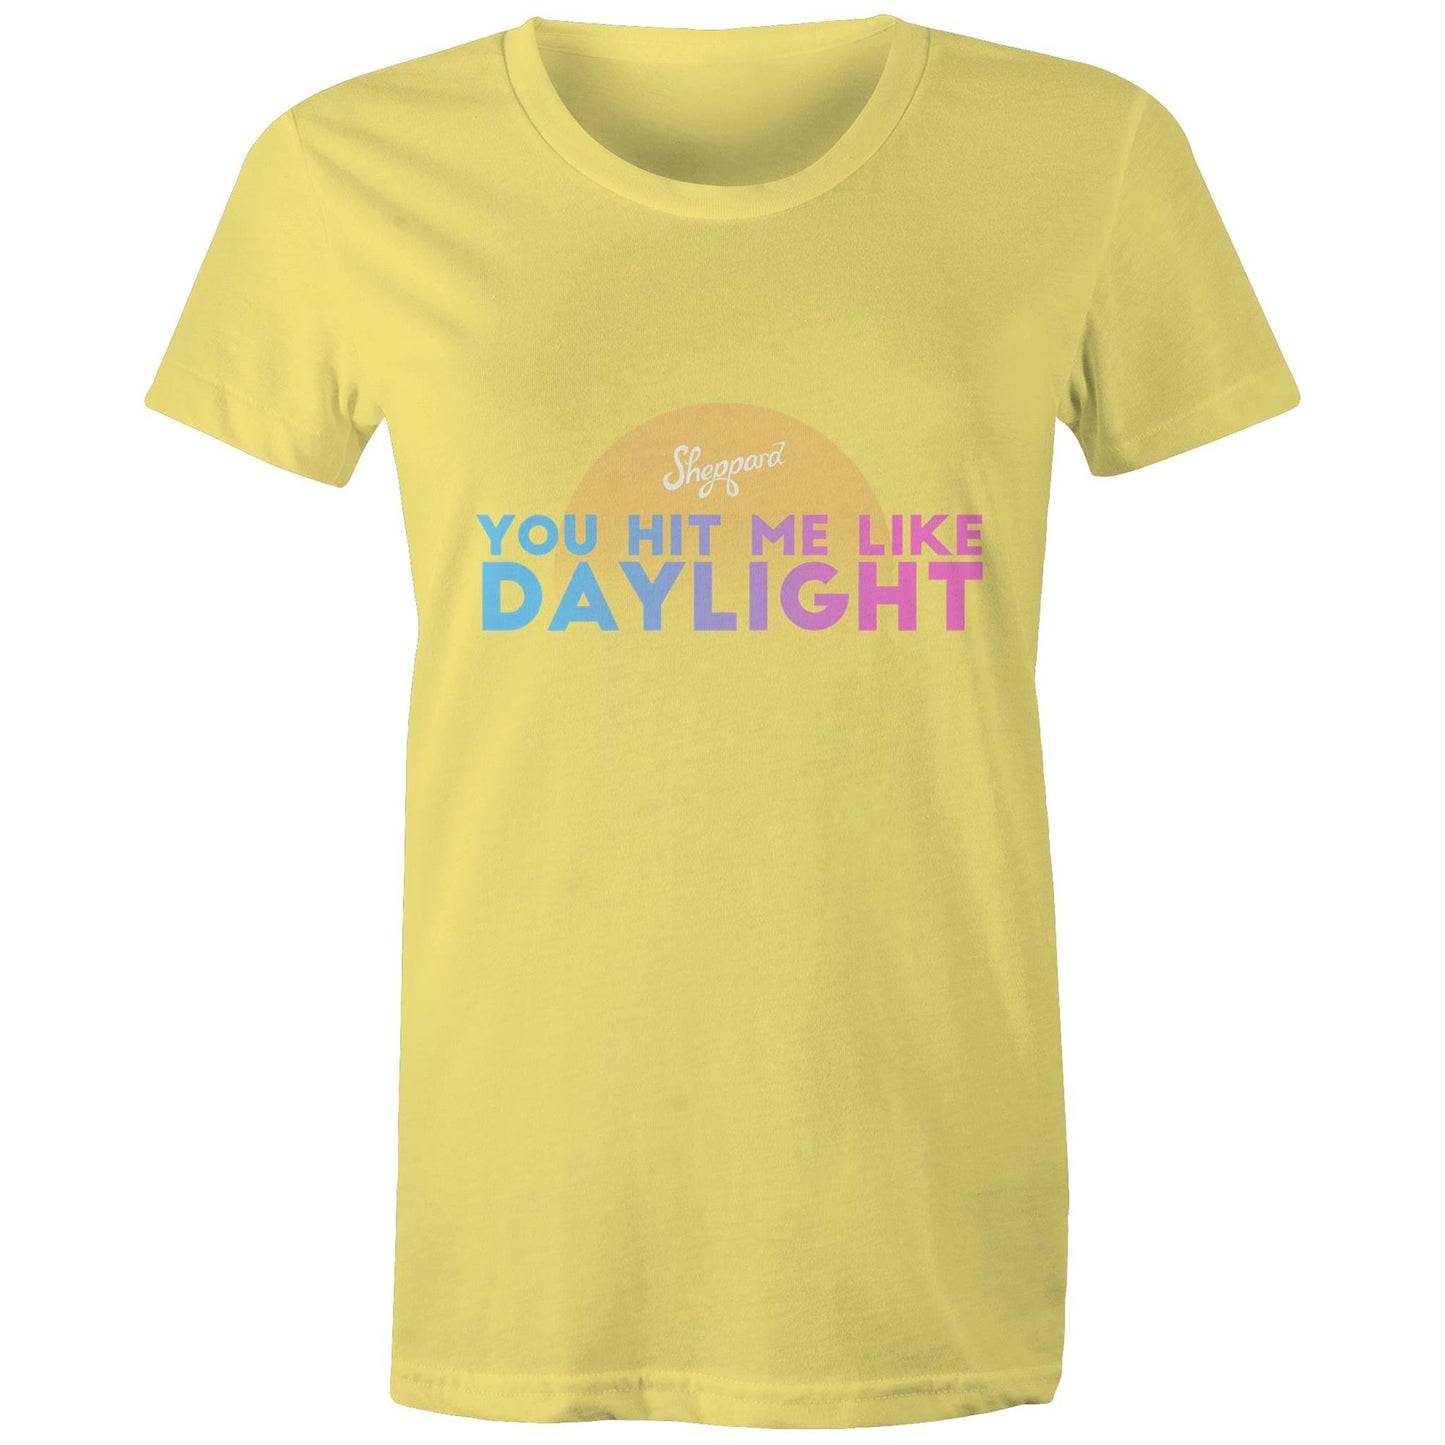 NEW! Daylight - Maple T-Shirt